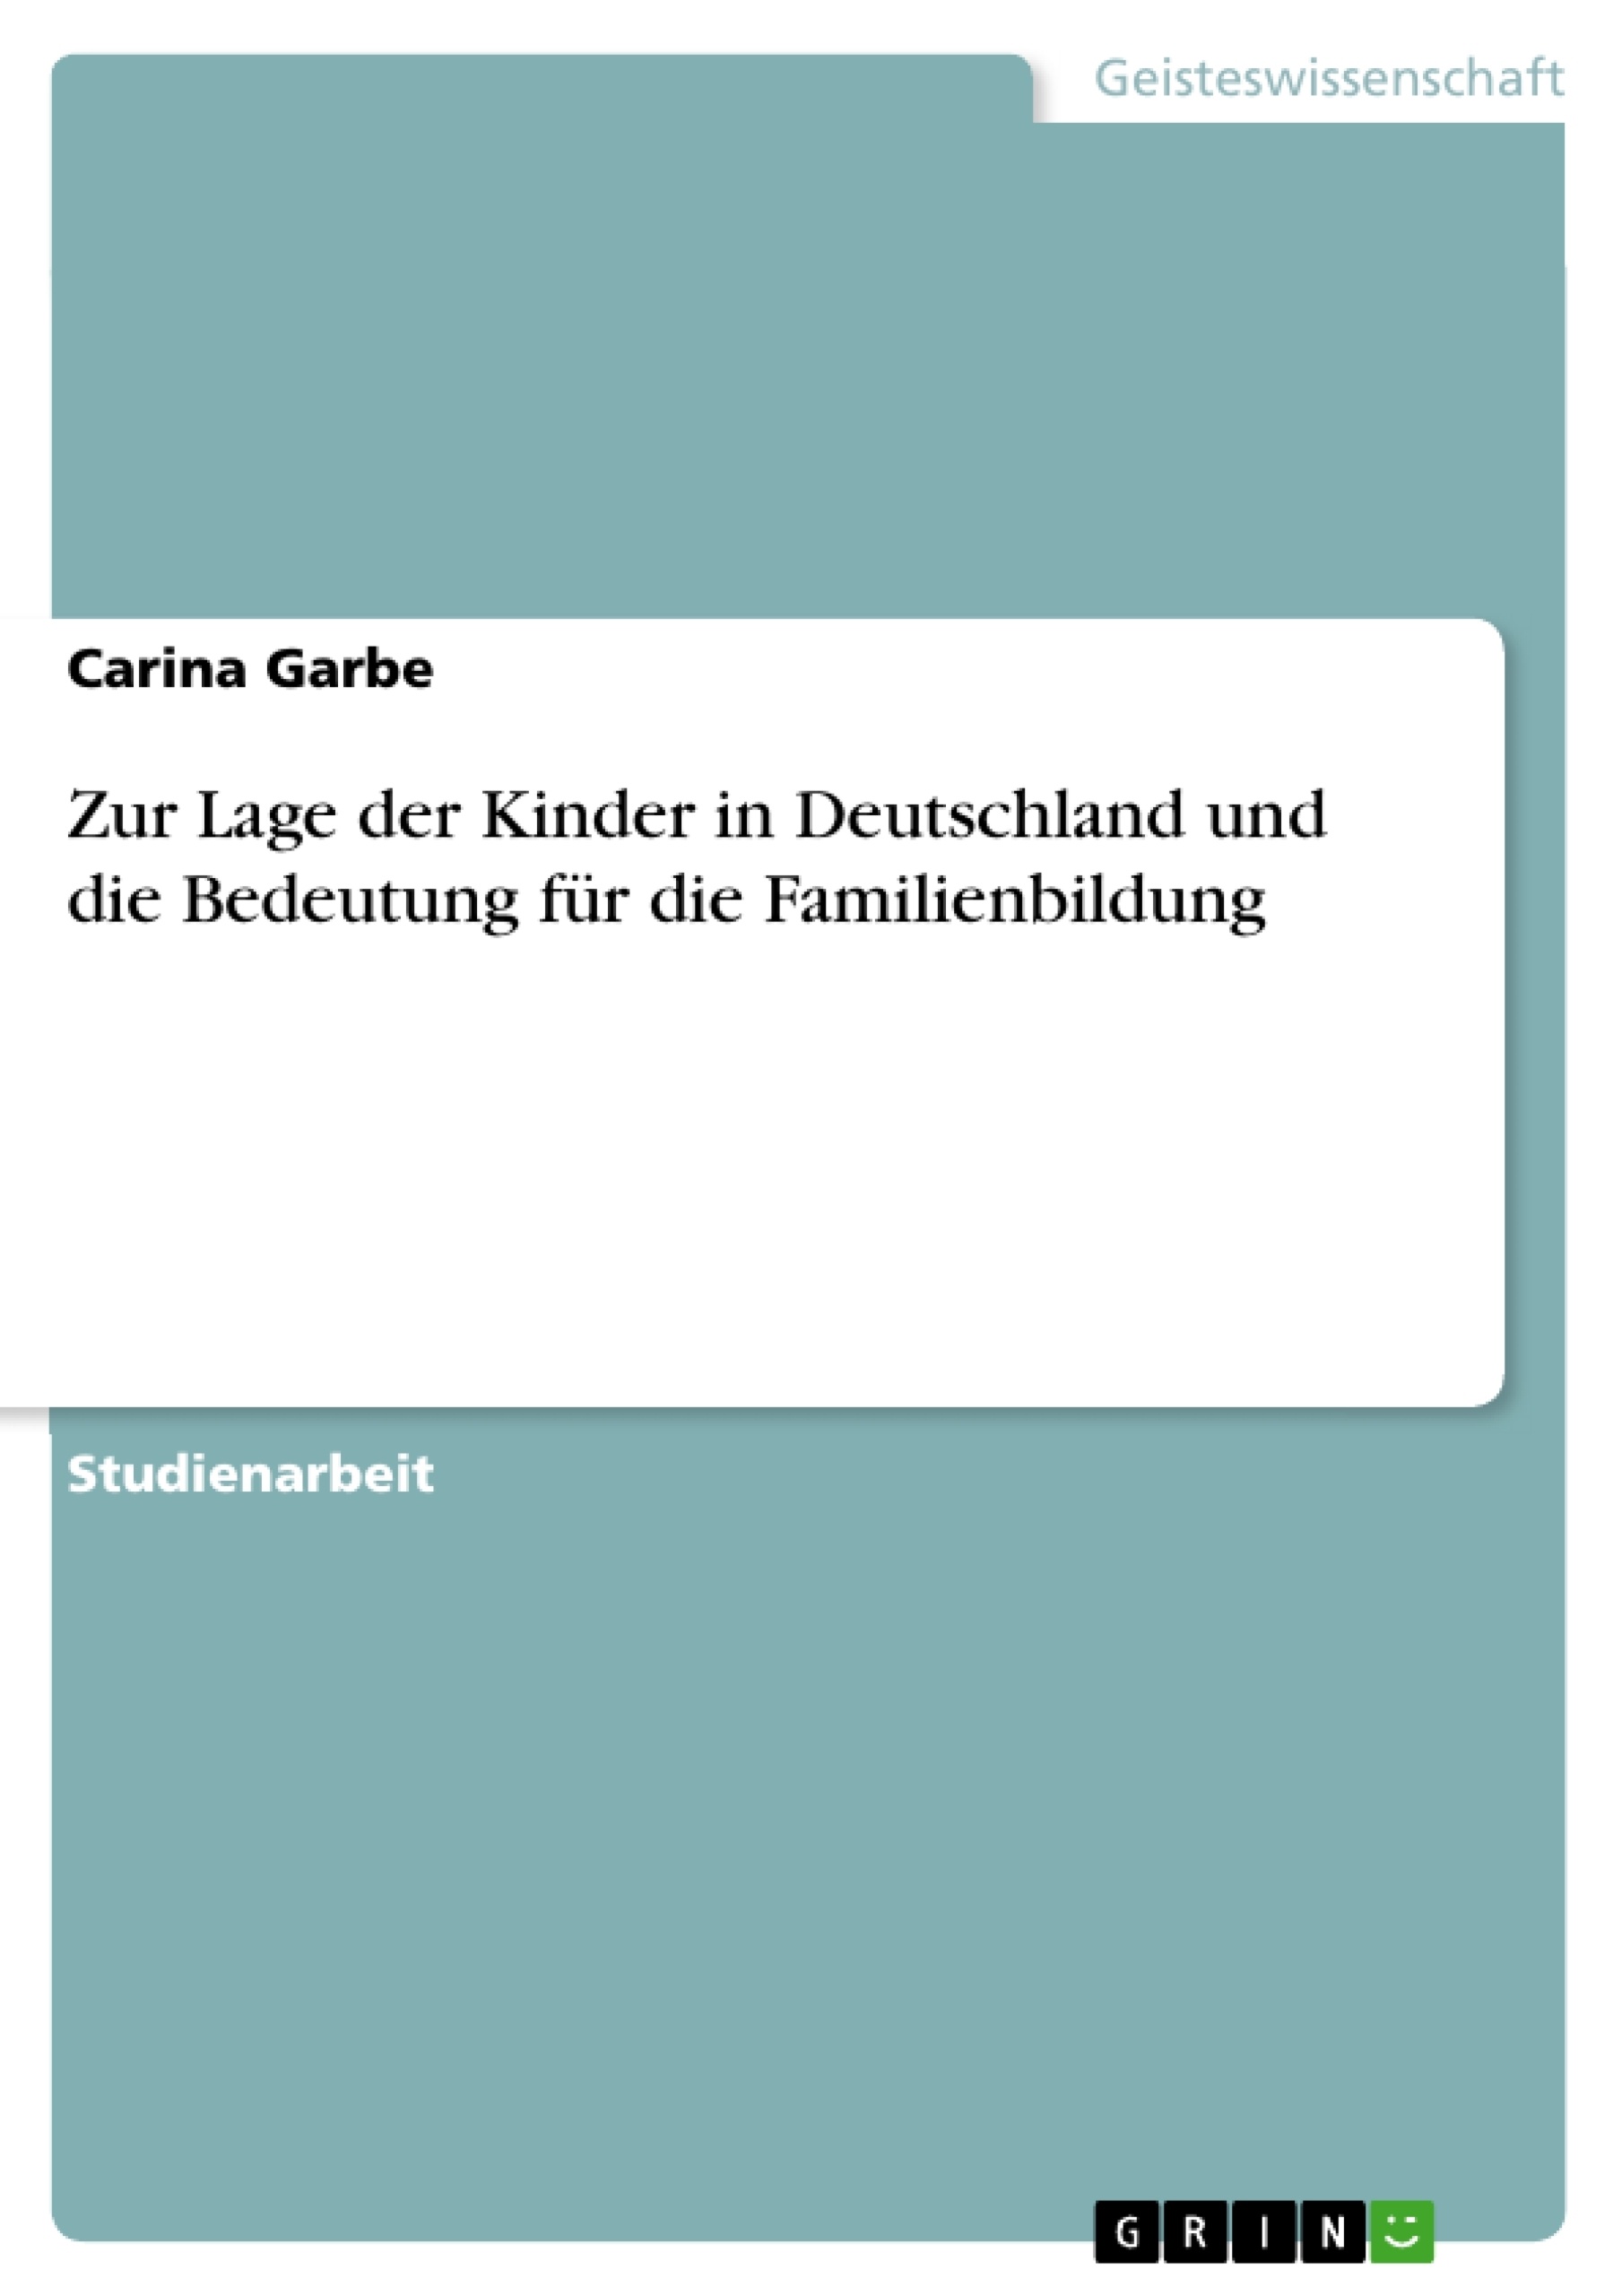 Título: Zur Lage der Kinder in Deutschland und die Bedeutung für die Familienbildung